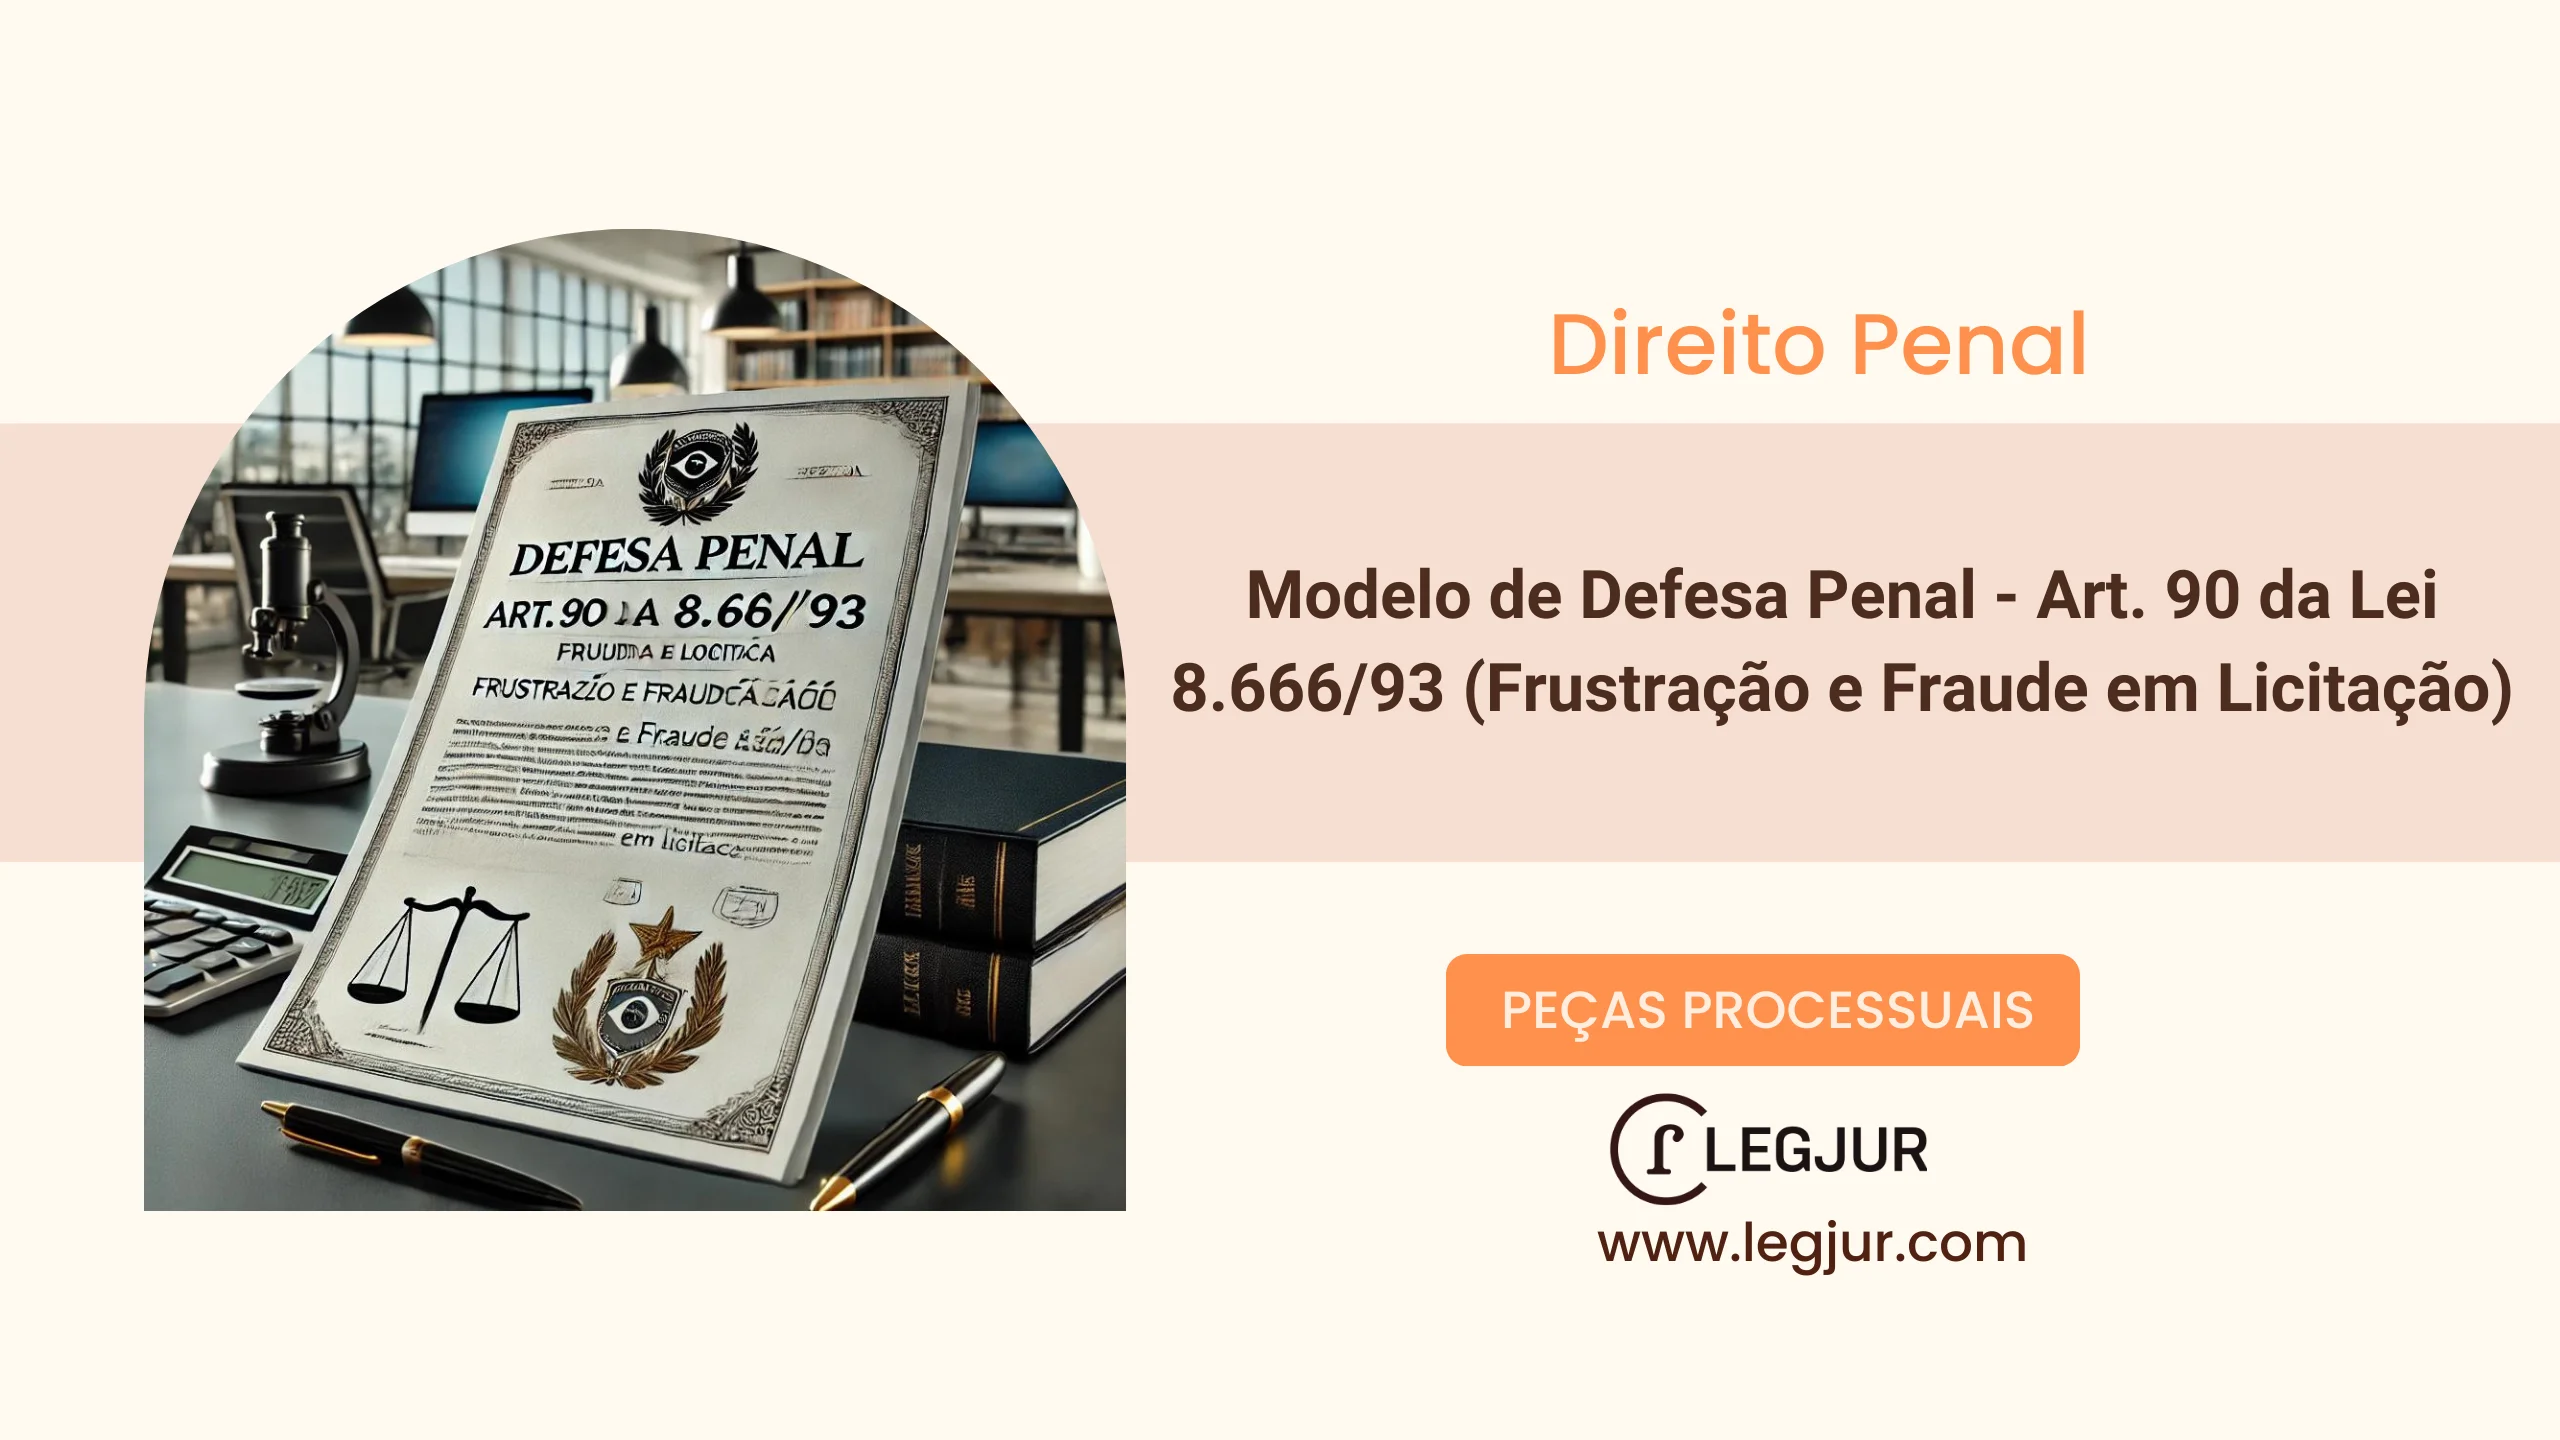 Modelo de Defesa Penal - Art. 90 da Lei 8.666/93 (Frustração e Fraude em Licitação)